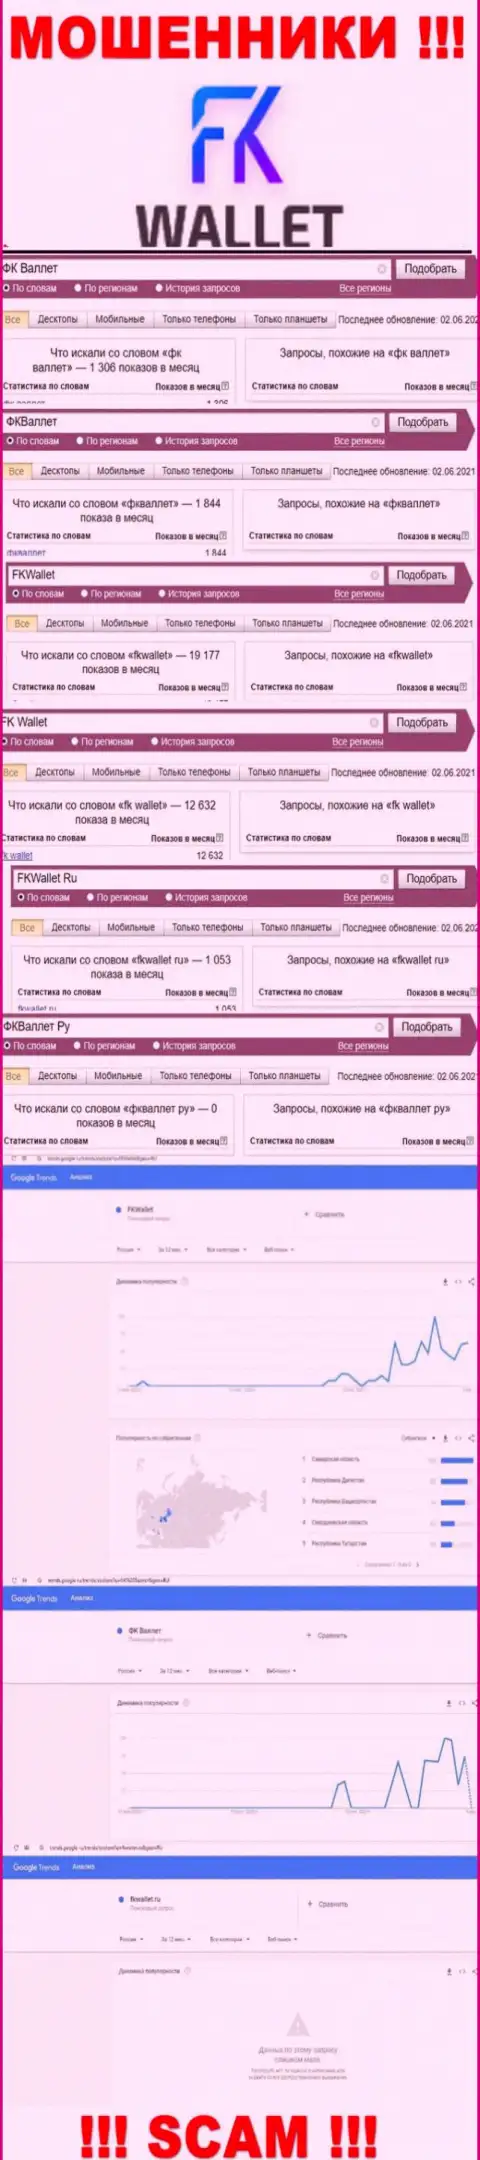 Скрин результатов online запросов по неправомерно действующей конторе ФКВаллет